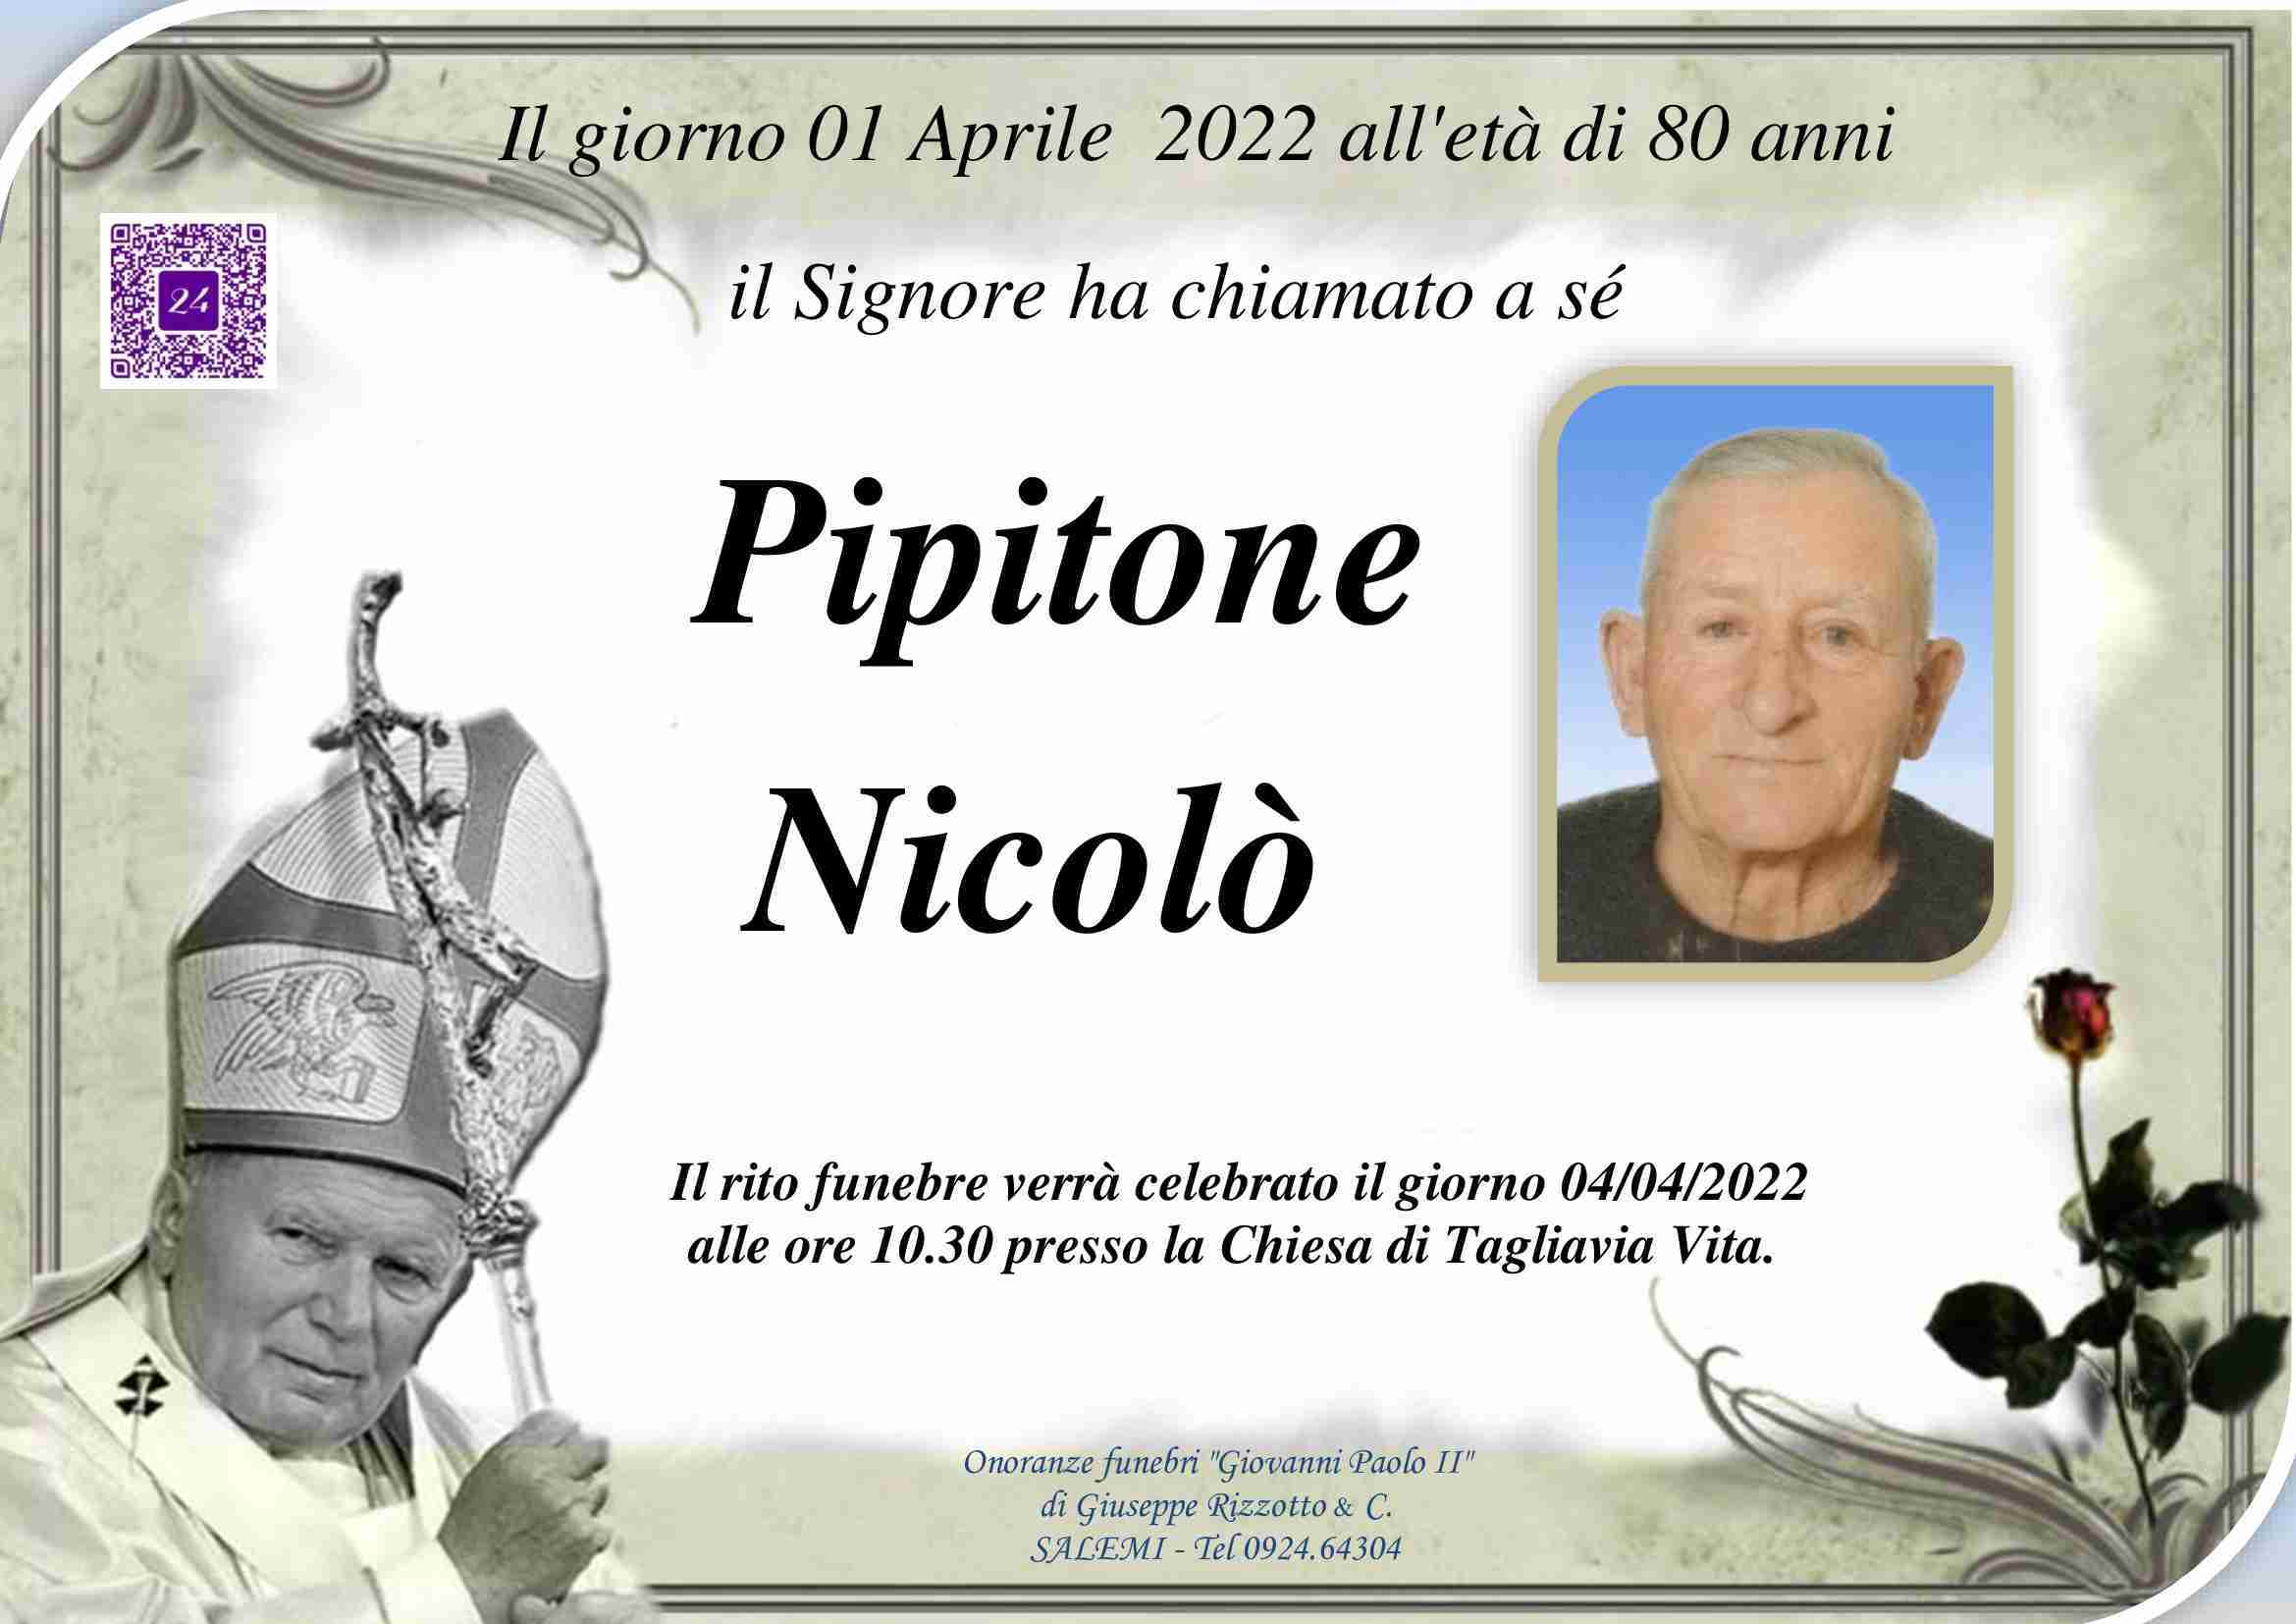 Nicolò Pipitone